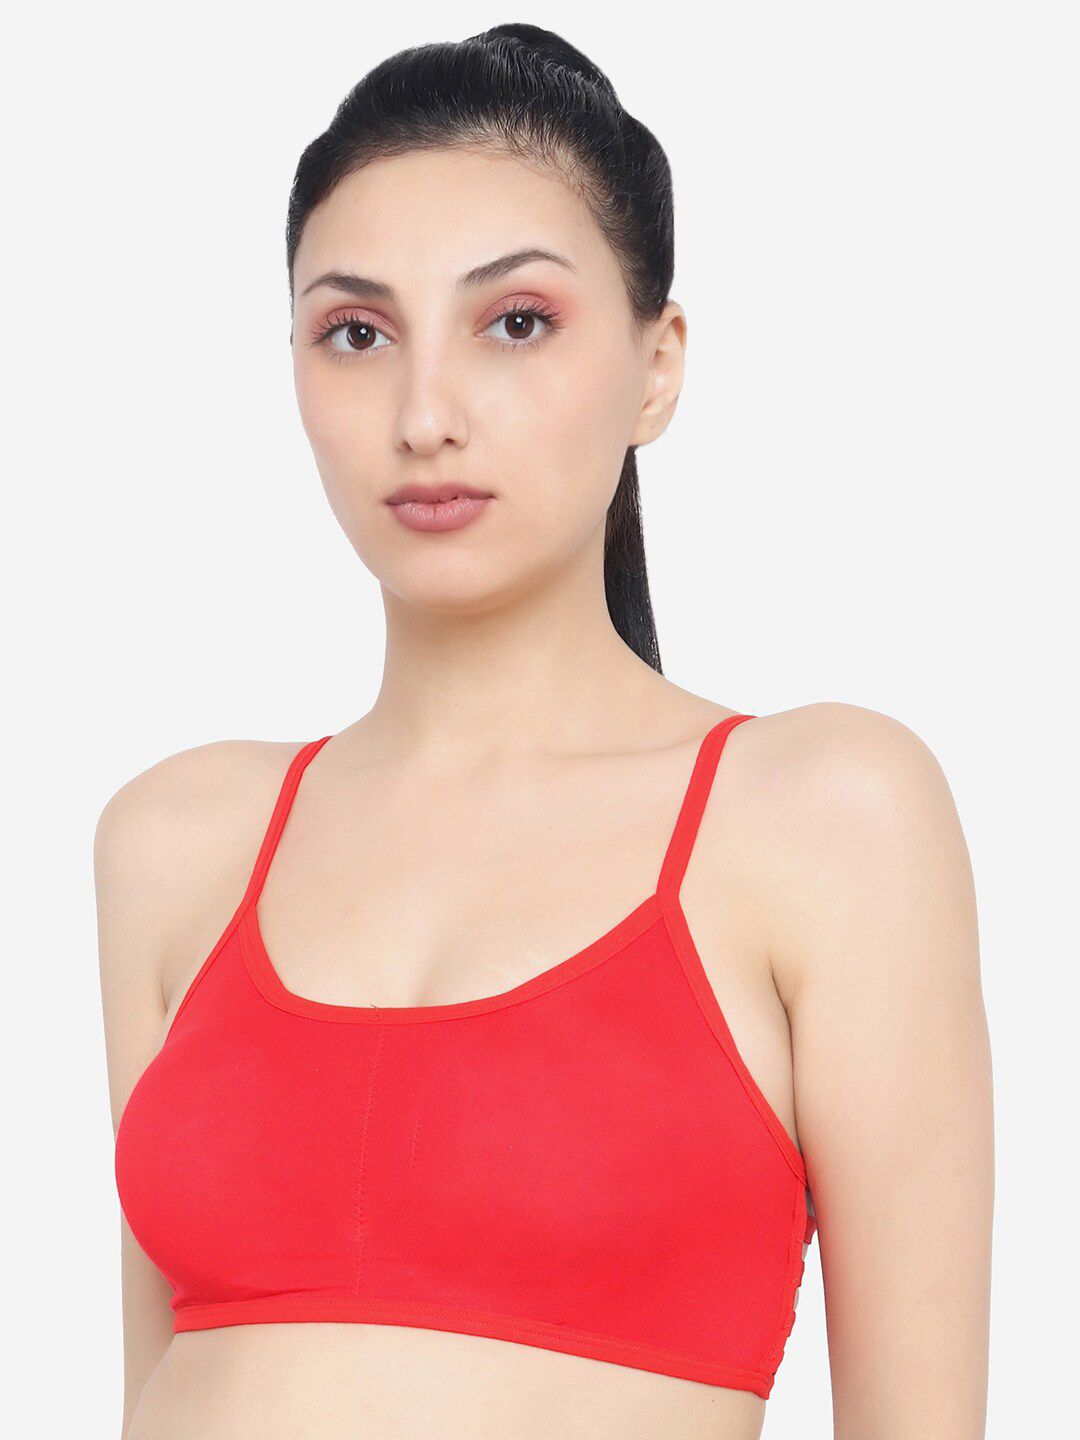 XOXO Design Red Cotton Bra Price in India